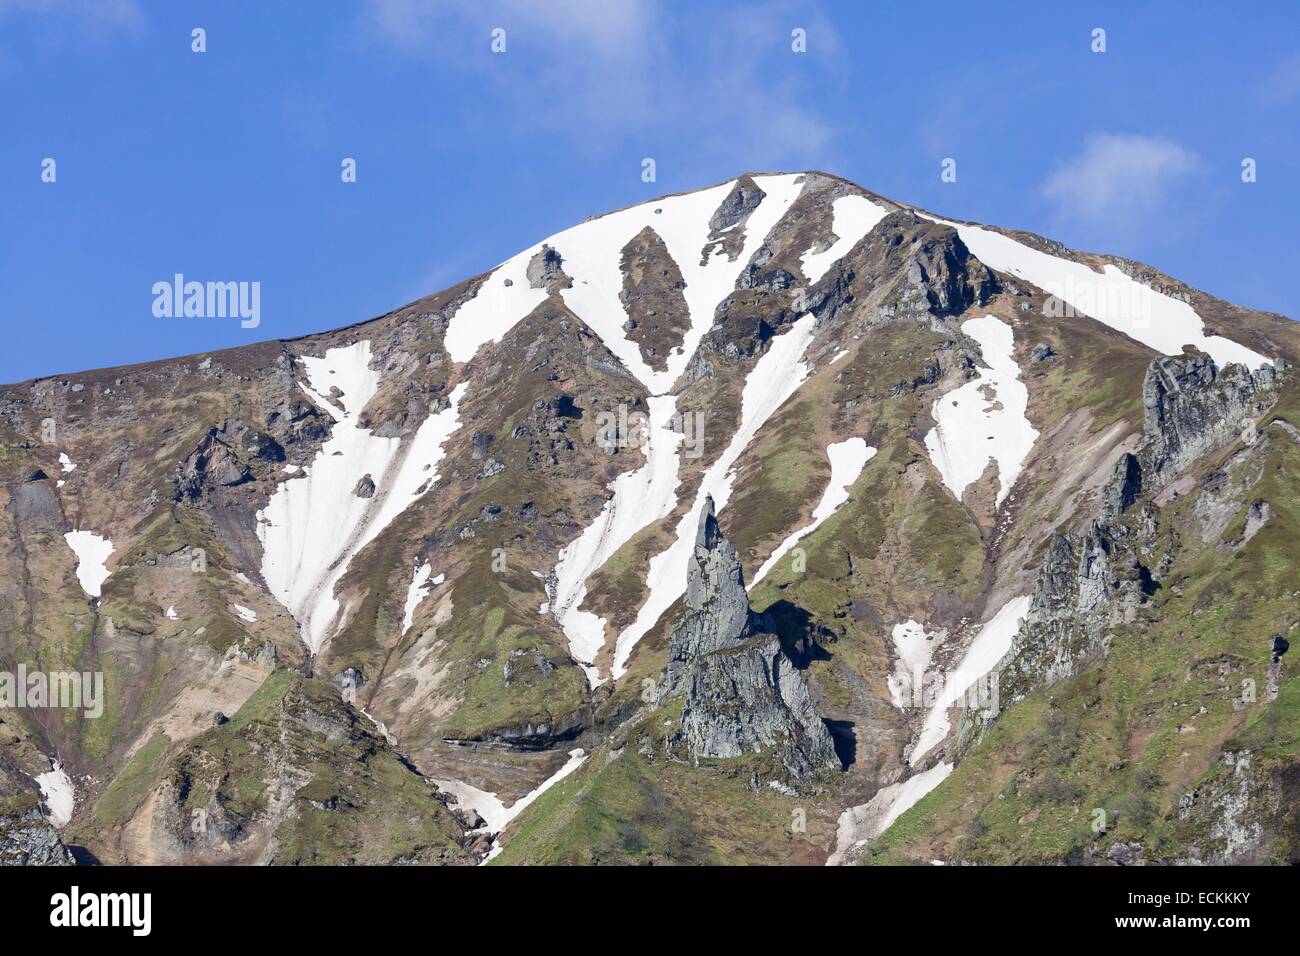 Francia, Puy de Dome, Parc naturel rΘgional des Volcans d'Auvergne, massiccio del Sancy, valle di Chaudefour, Puy Ferrand peak Foto Stock